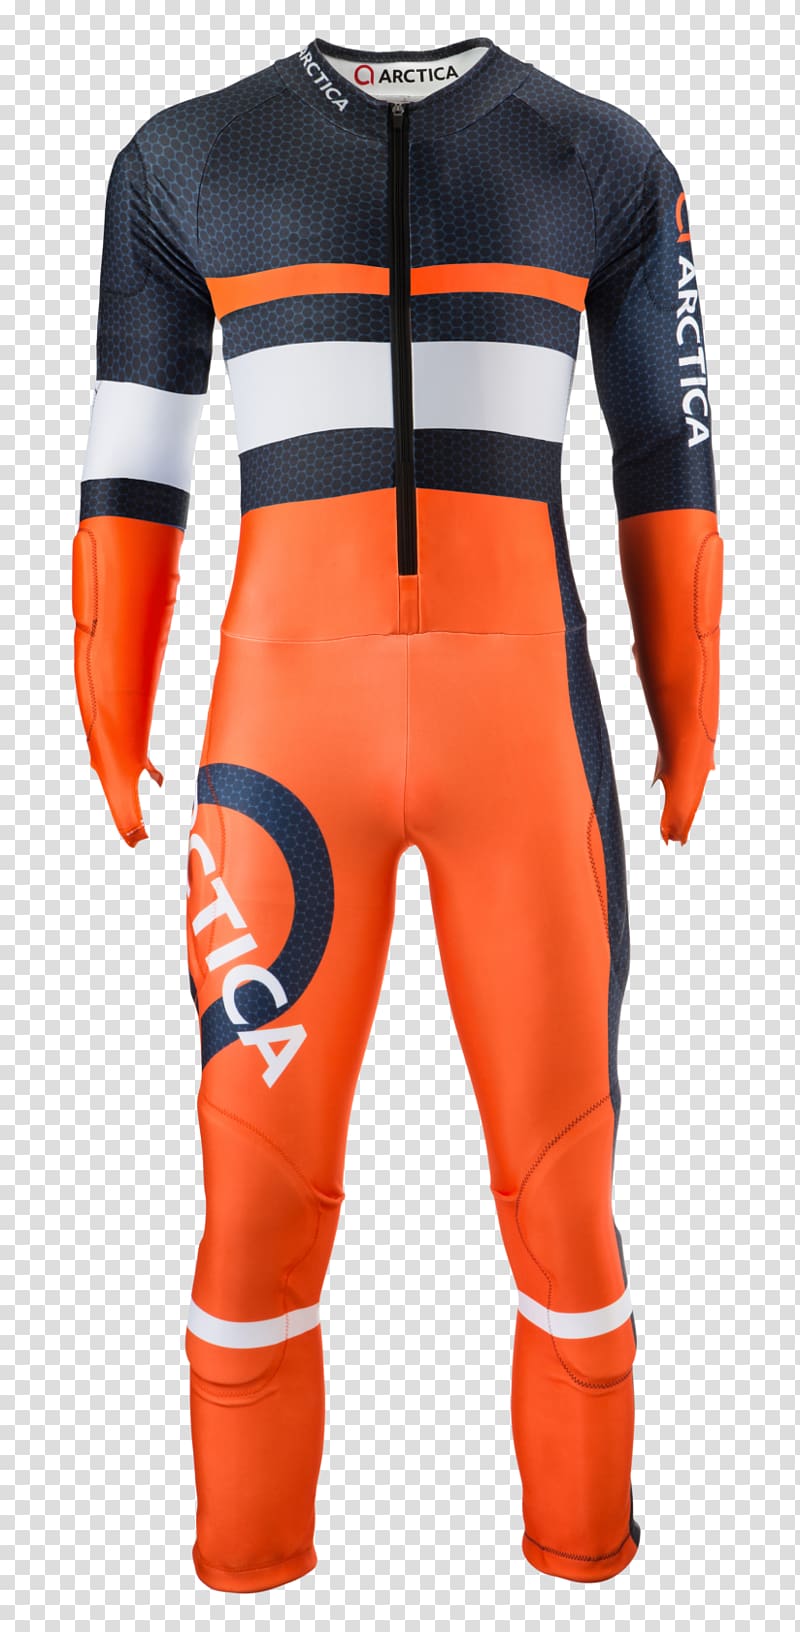 Arctica Speedsuit Ski suit, others transparent background PNG clipart